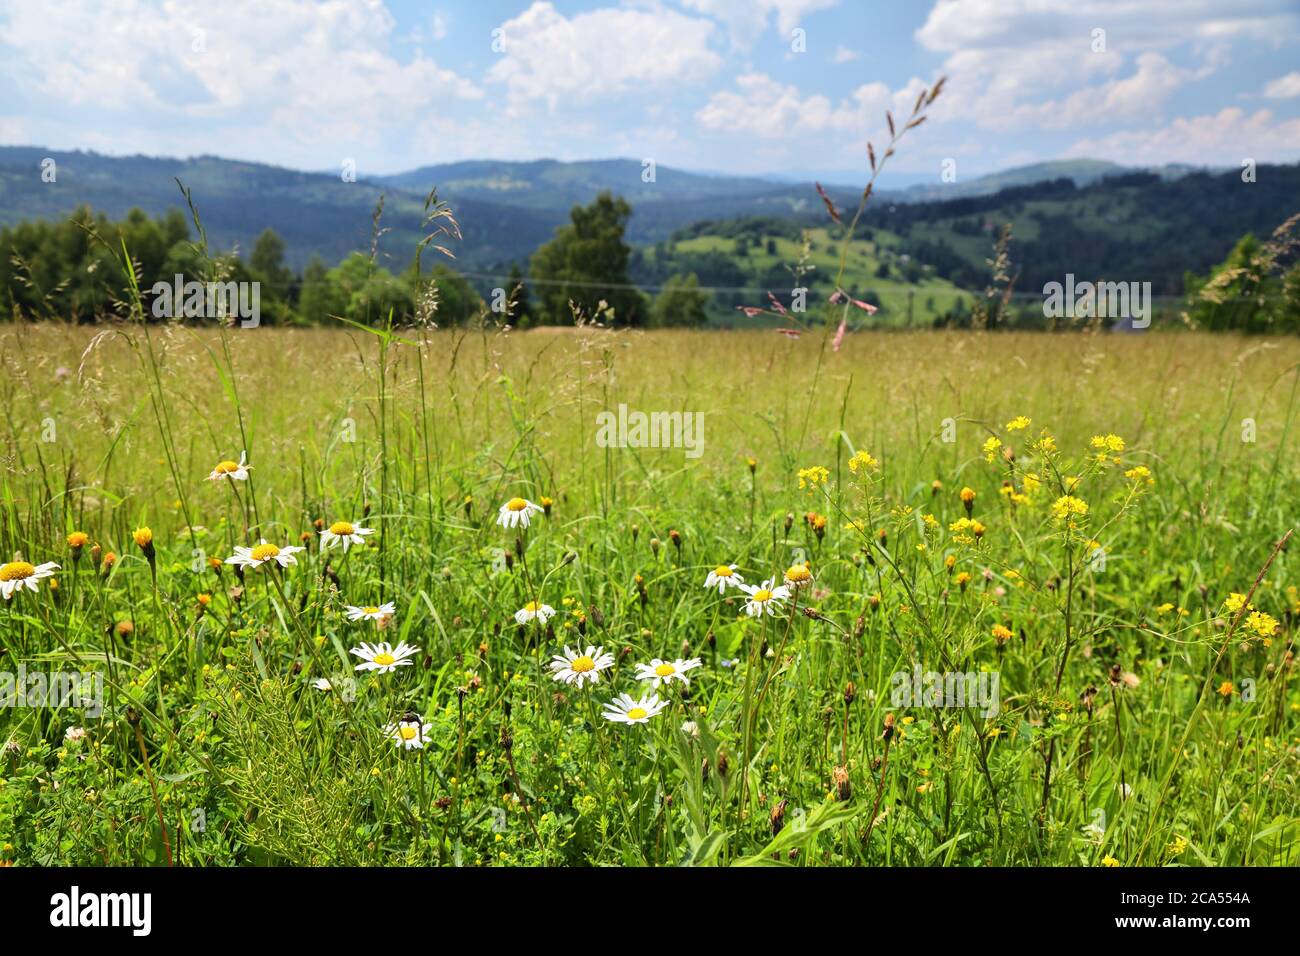 Wildflowers in Zywiec Beskids (Beskid Zywiecki) in Poland. Silesia region nature. Stock Photo